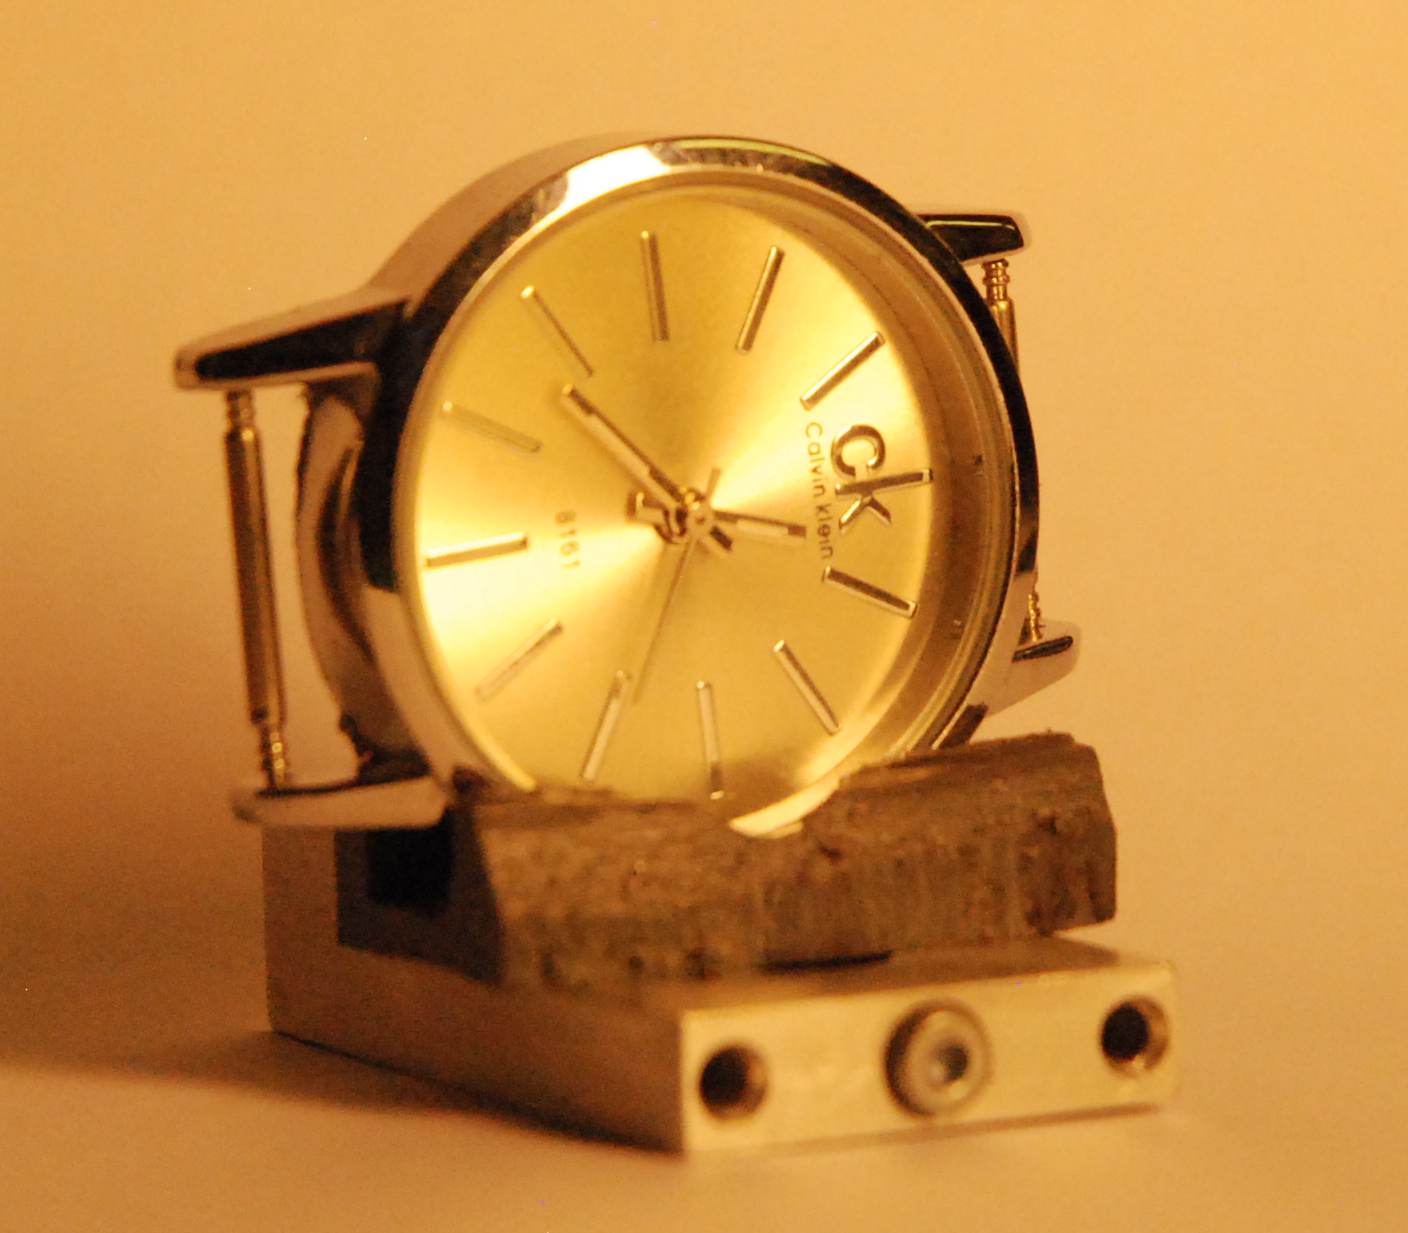 кварцевые часы установленные в держатель манипулятора